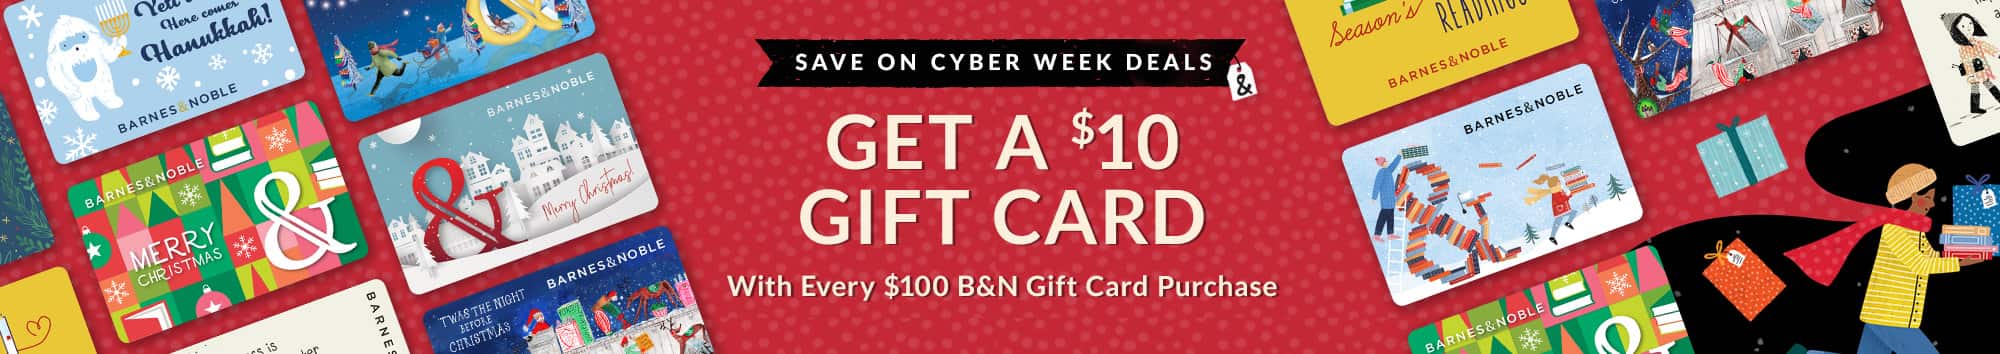 giftcard cyber week deals